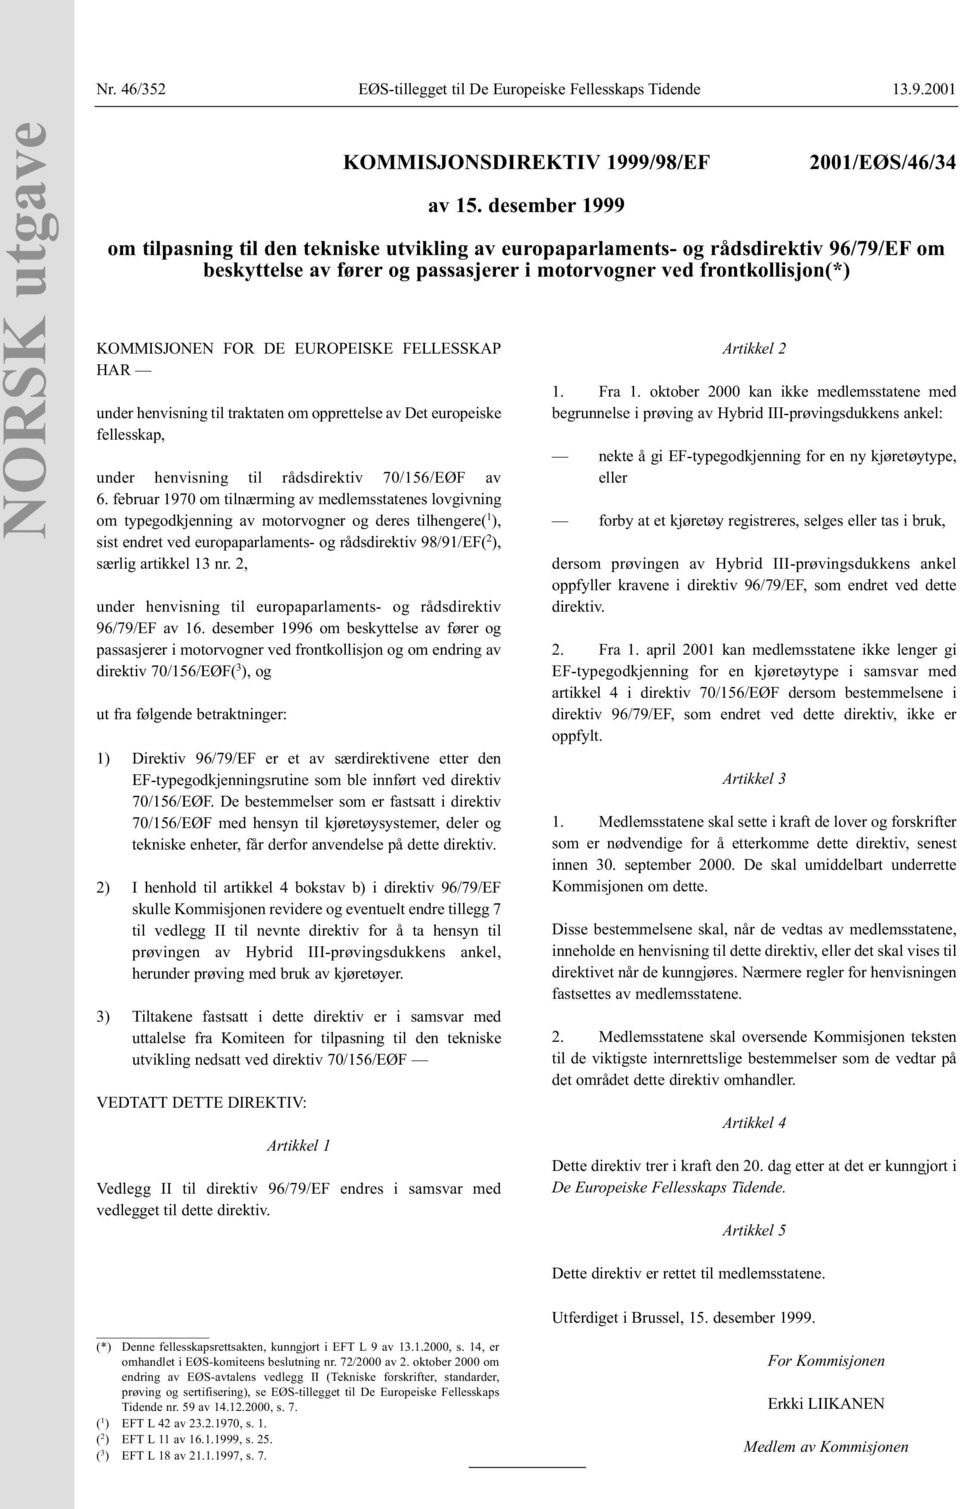 februar 1970 om tilnærming av medlemsstatenes lovgivning om typegodkjenning av motorvogner og deres tilhengere( 1 ), sist endret ved europaparlaments- og rådsdirektiv 98/91/EF( 2 ), særlig artikkel